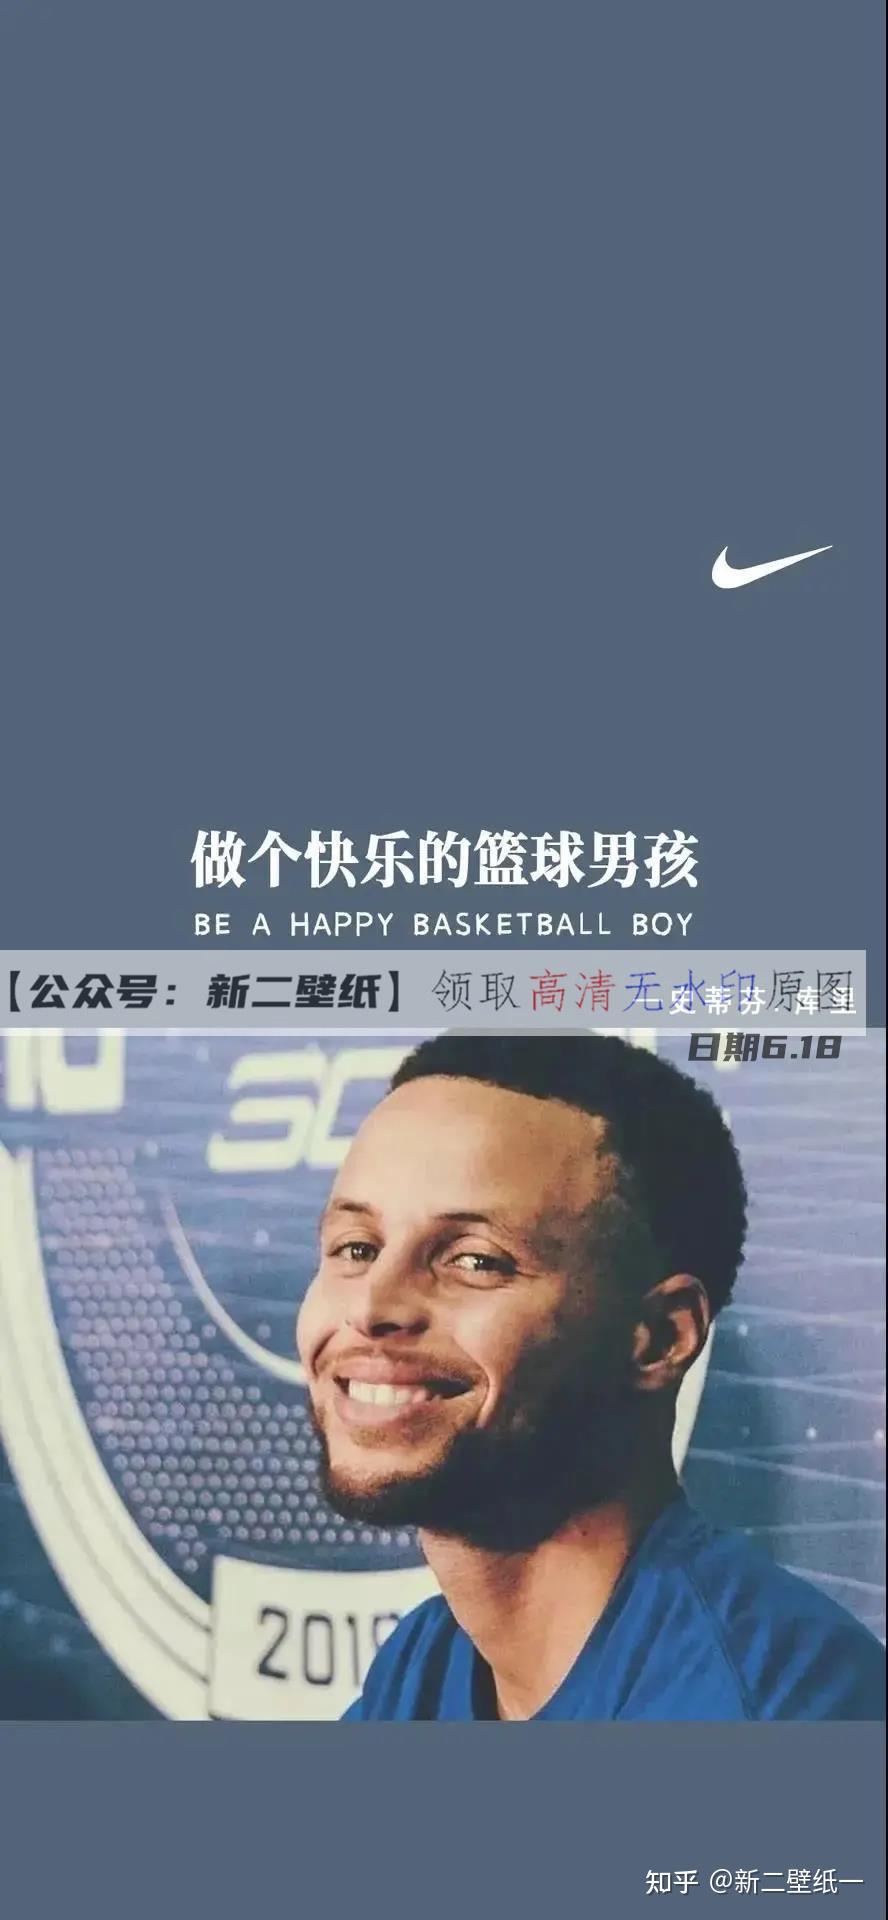 做个快乐的篮球男孩 图片 抖音热门 朋友圈 文案 背景微信 壁纸 